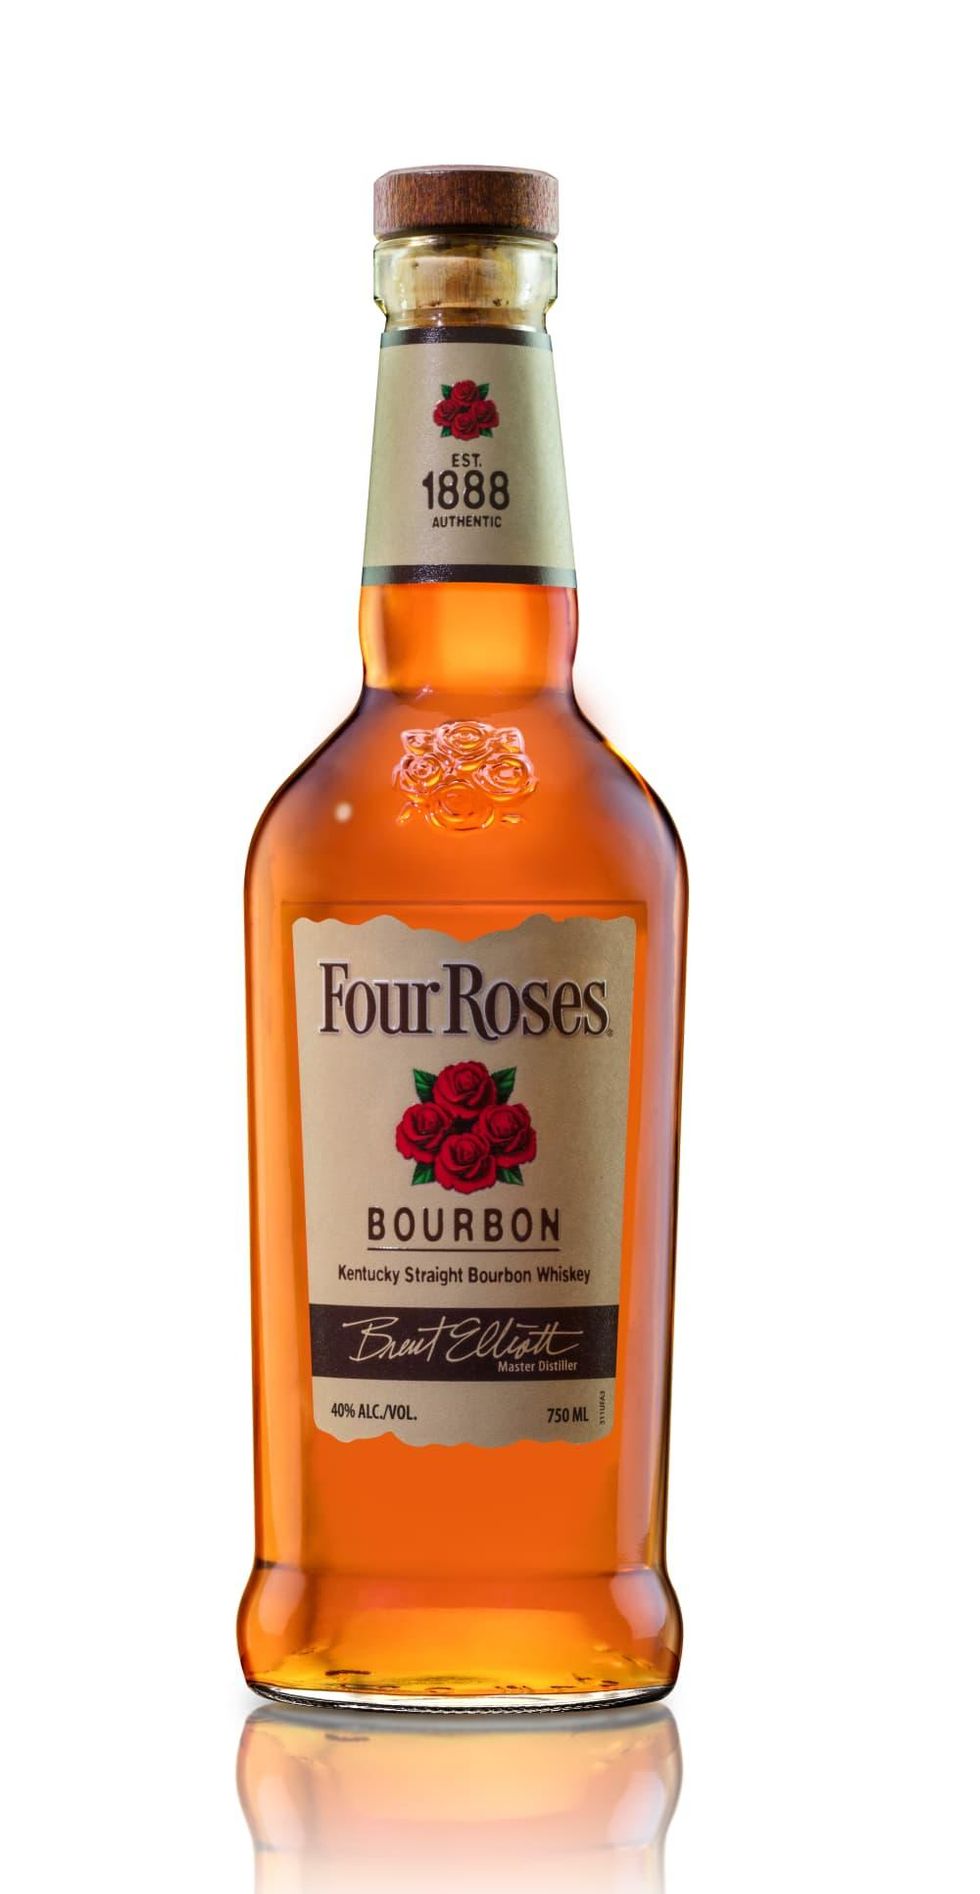 Bottle of Four Roses bourbon